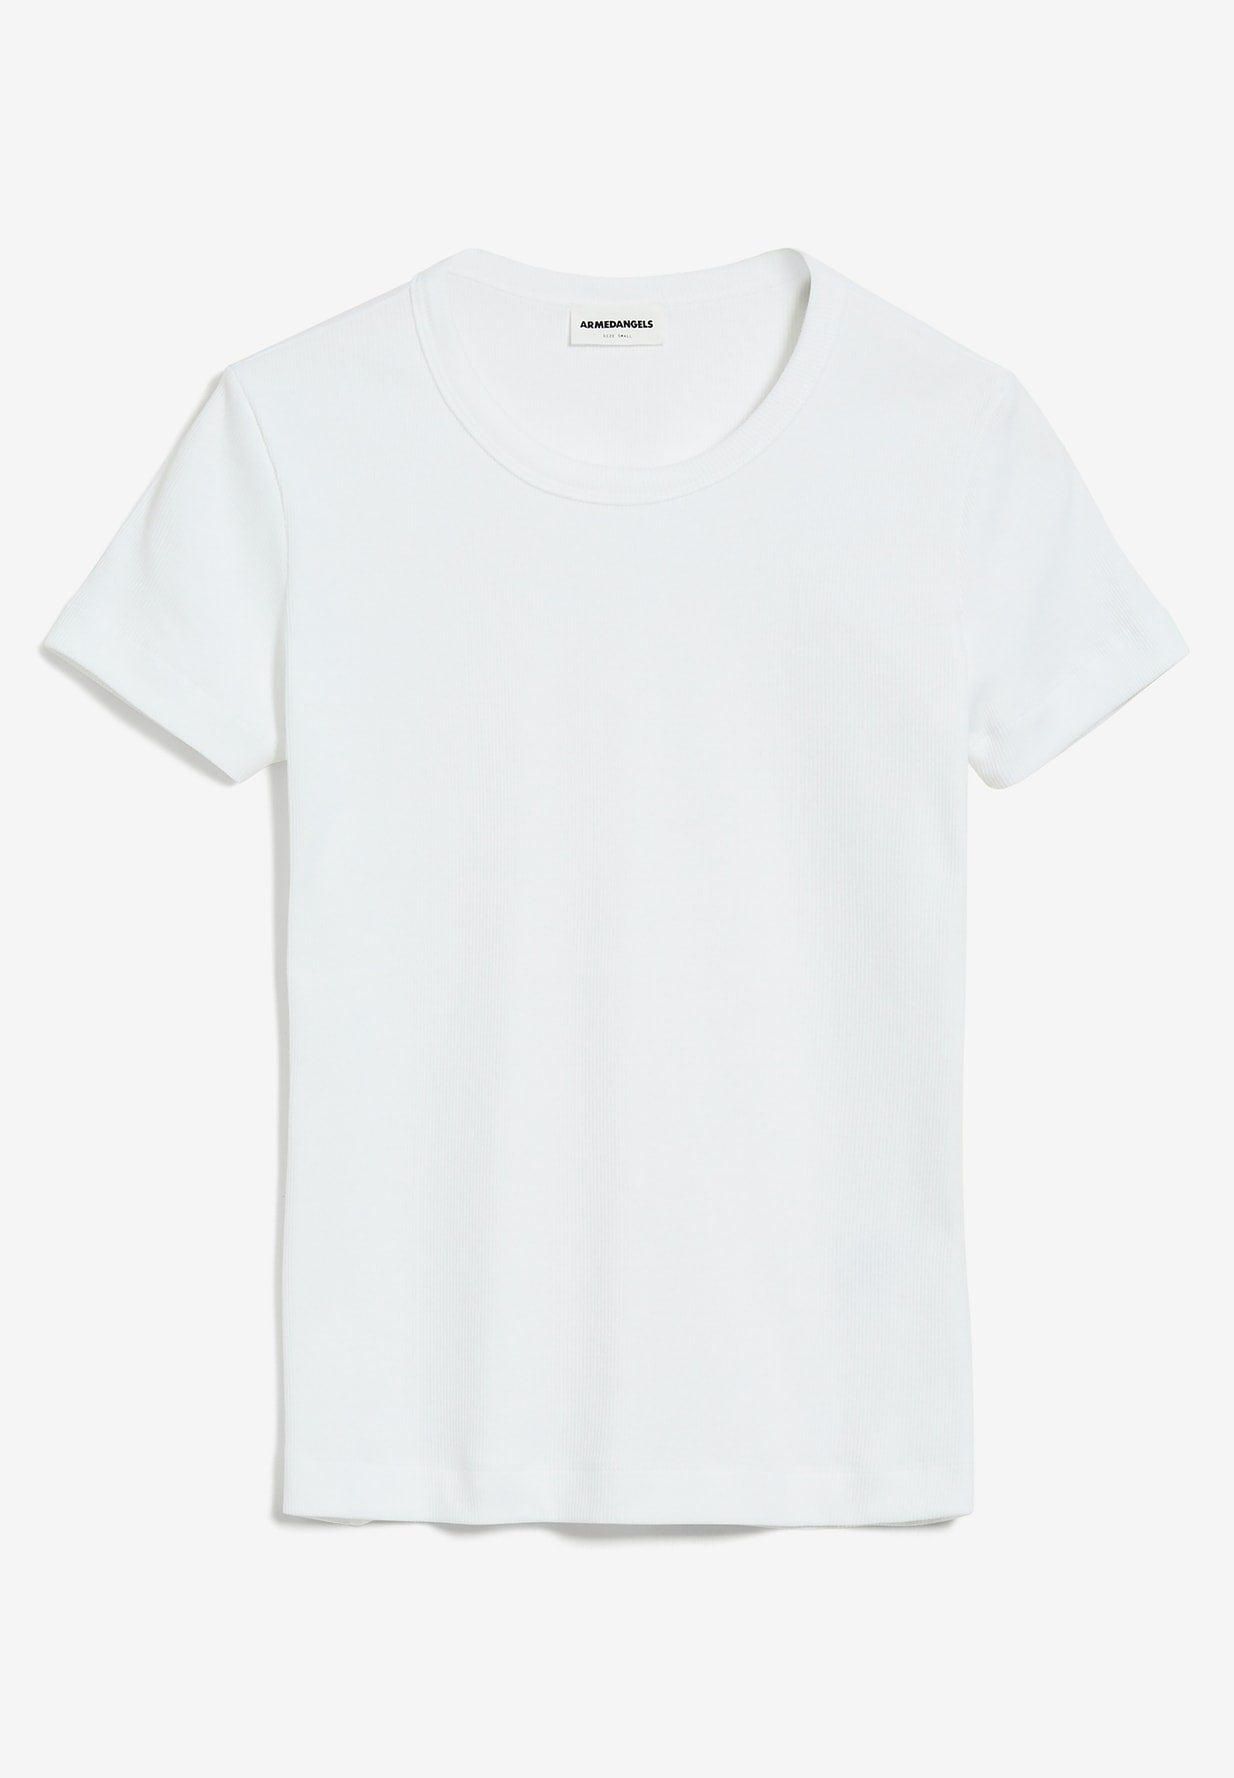 t-shirt kardaa white